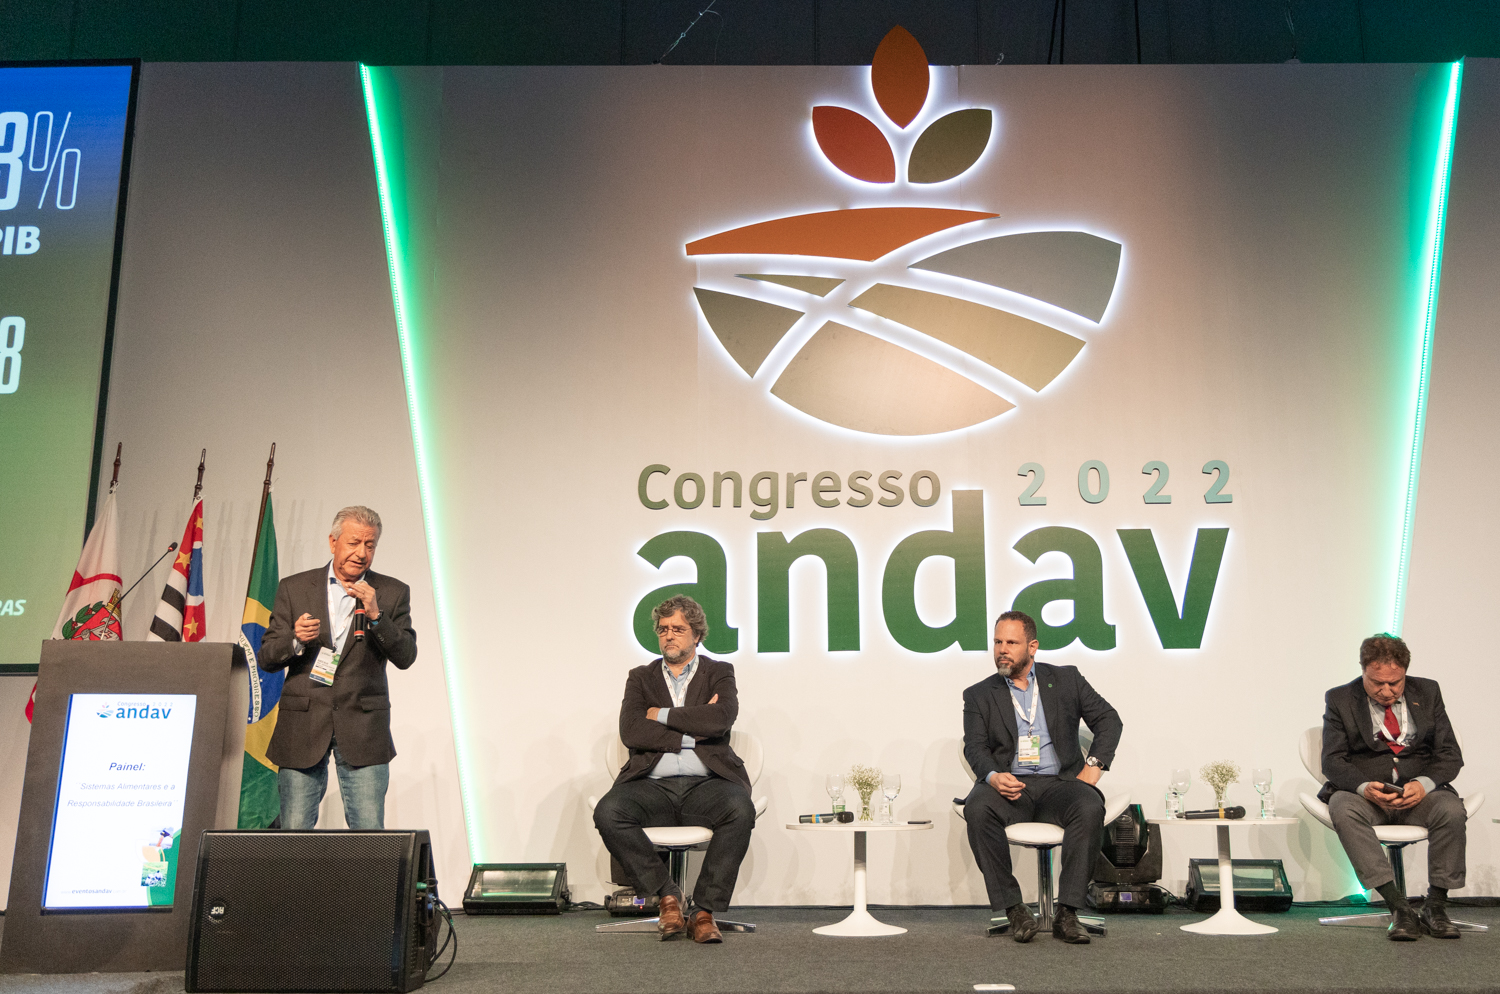 Painel Segurança Alimentar no Congresso Andav 2022. - Foto: FD fotografia/Divulgação